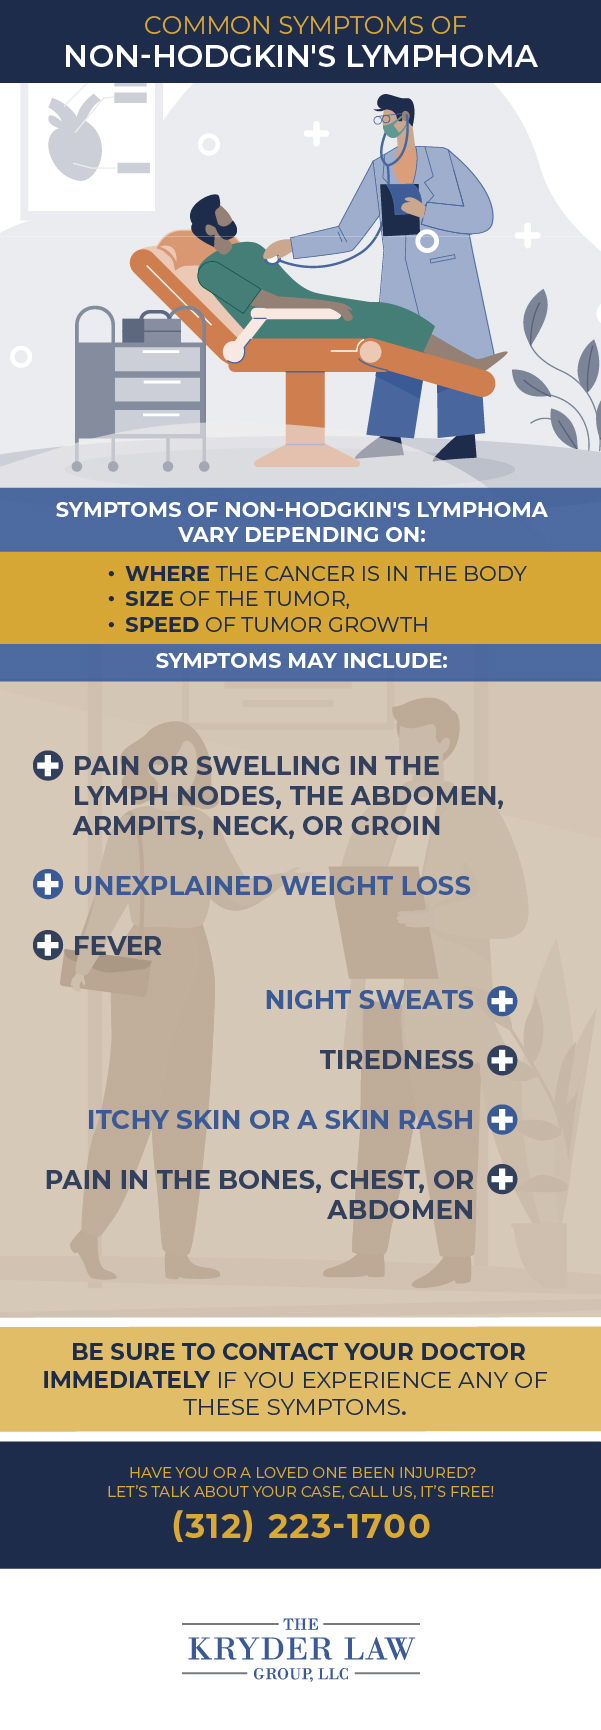 Common Symptoms of Non-Hodgkin's Lymphoma